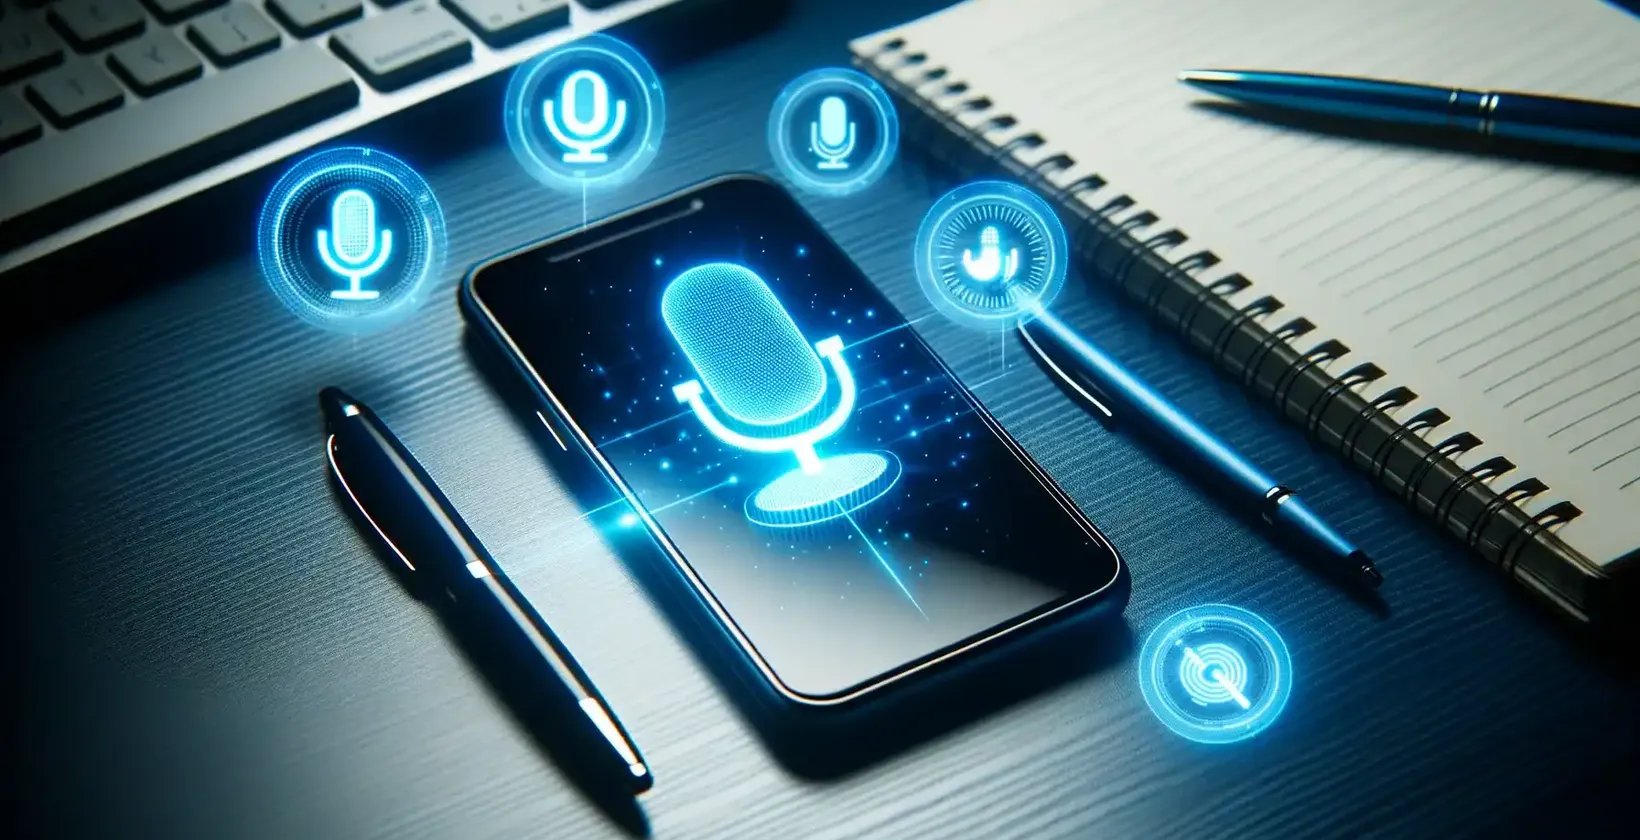 Pridávanie textu do videa na zariadeniach Samsung ilustrované smartfónom Samsung zobrazujúcim symboly hlasových príkazov na stole